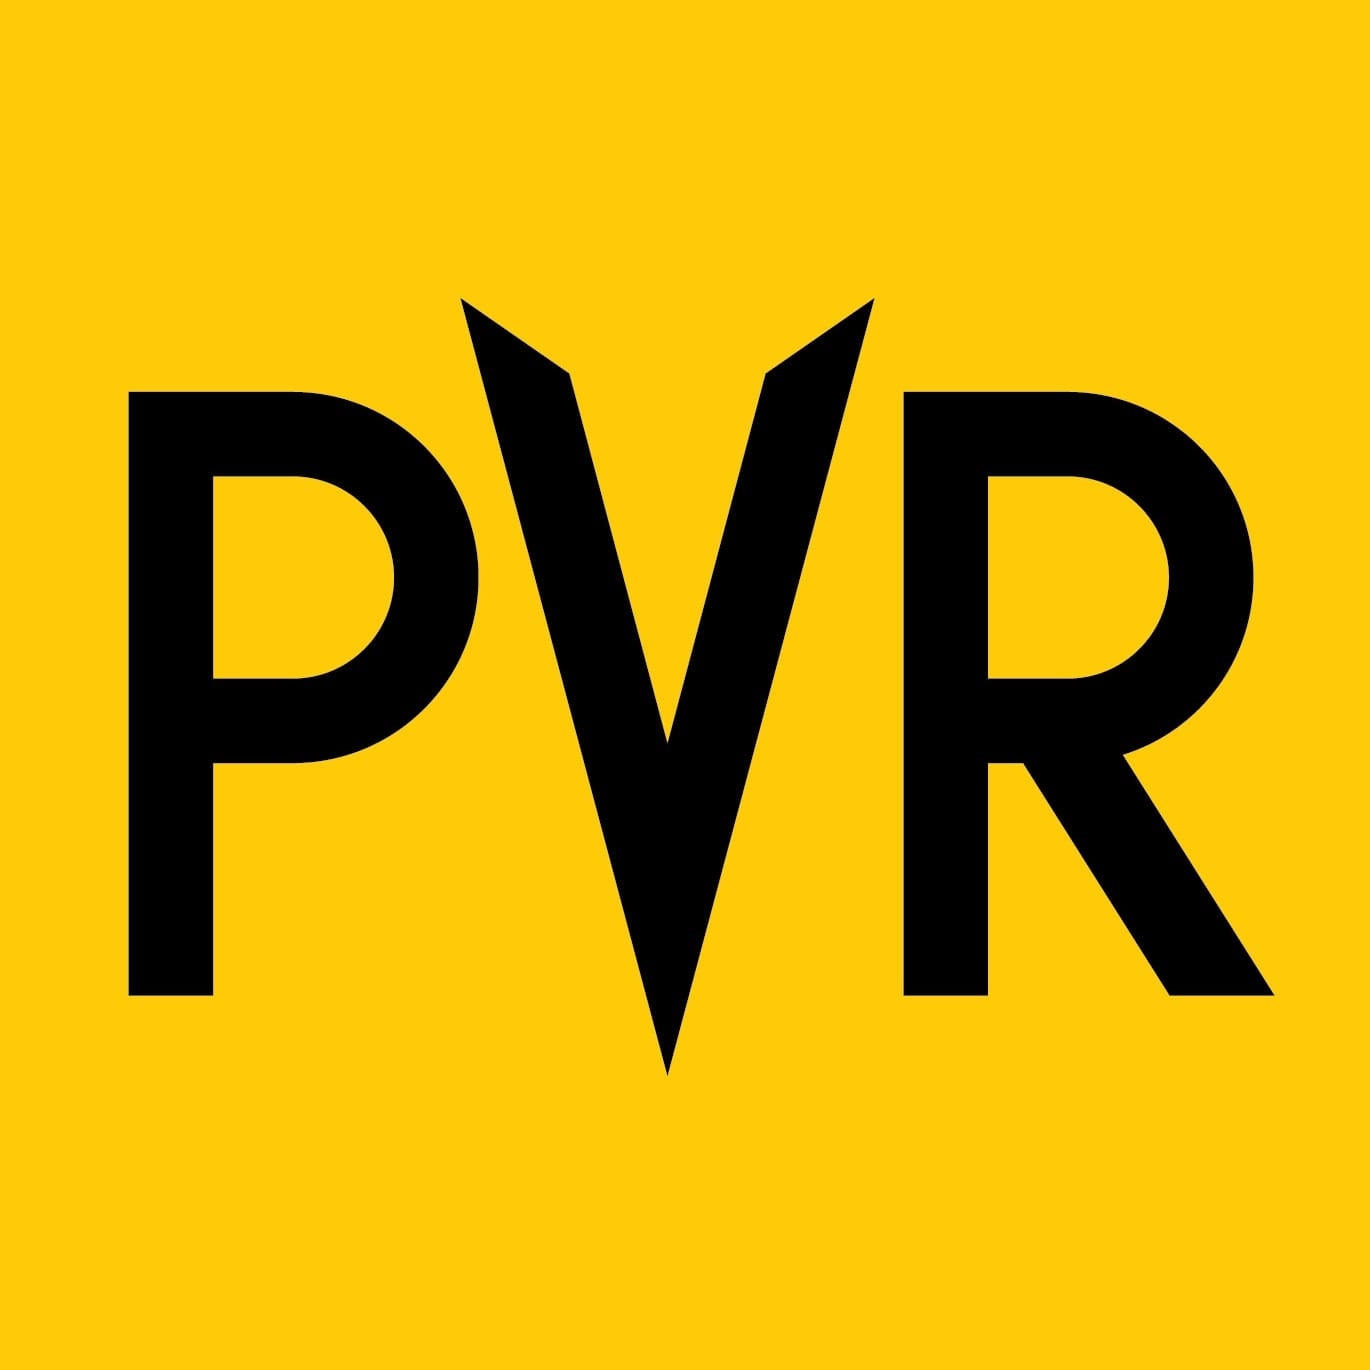 PVR Priya Logo